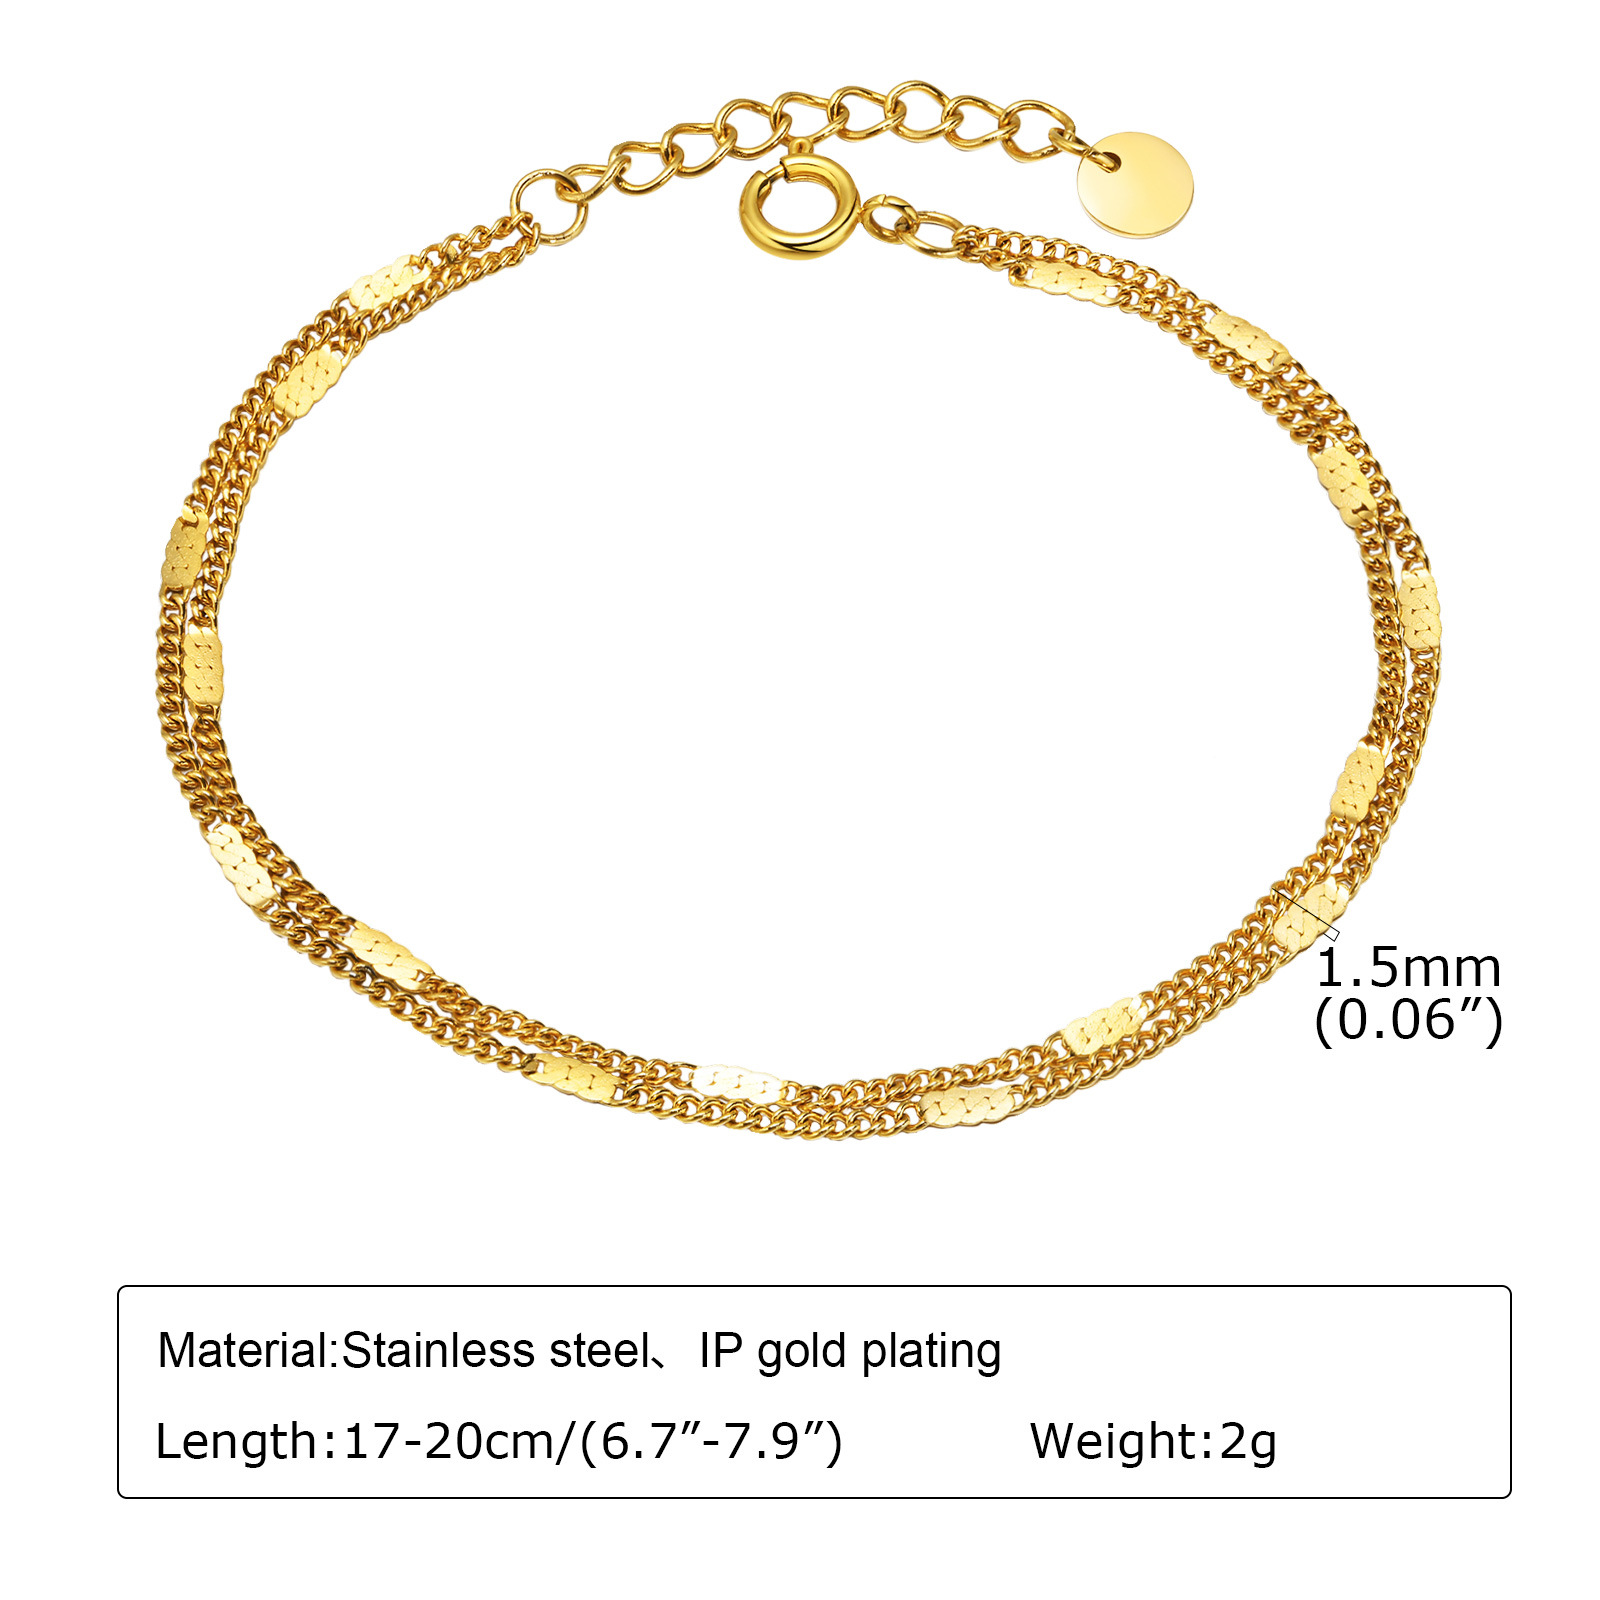 1:Double bracelet 17cm tail chain 3cm